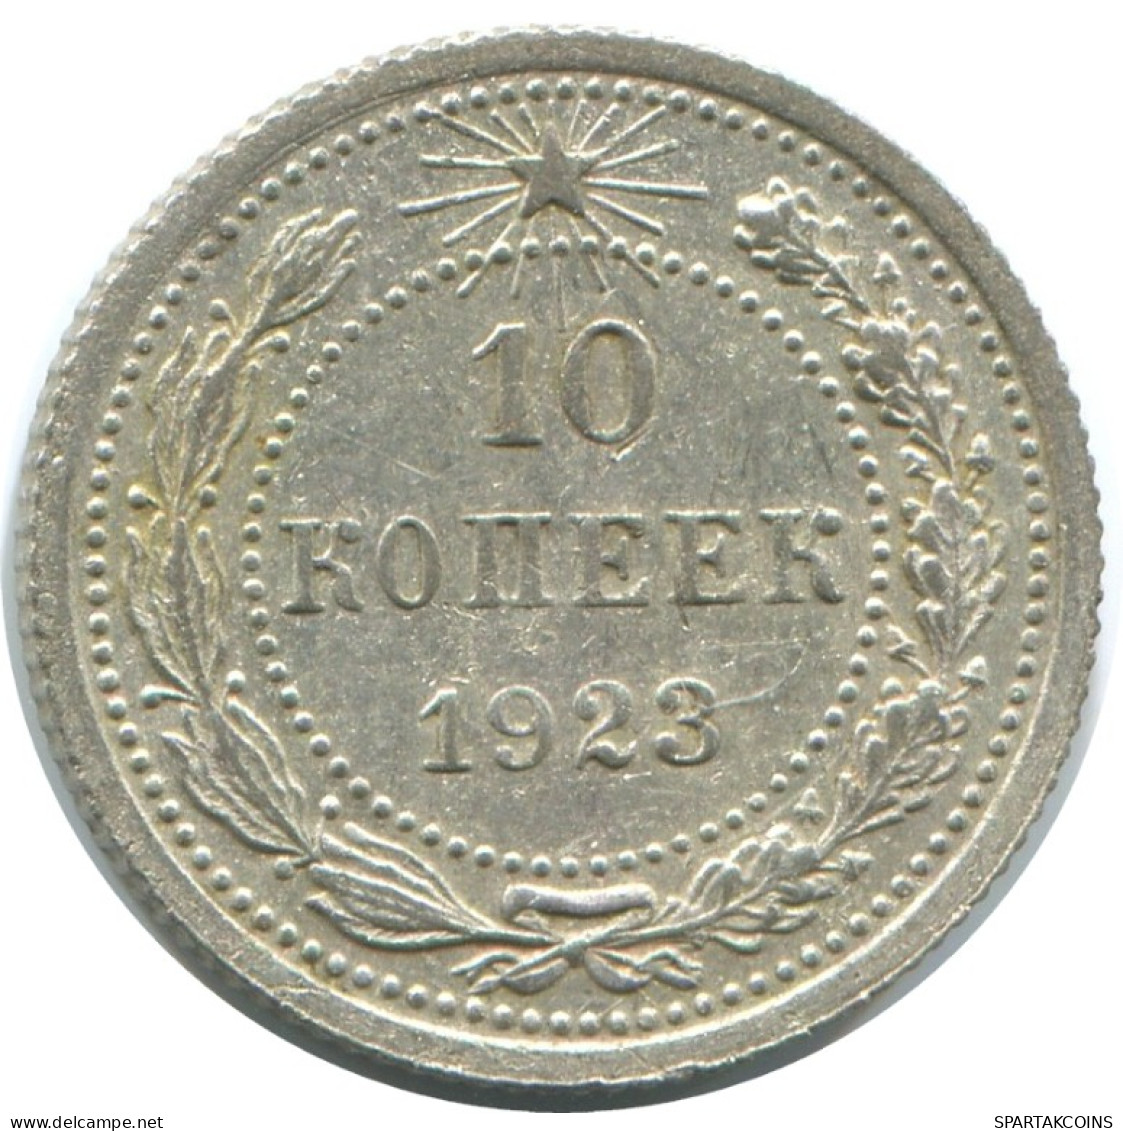 10 KOPEKS 1923 RUSSLAND RUSSIA RSFSR SILBER Münze HIGH GRADE #AE992.4.D.A - Russia